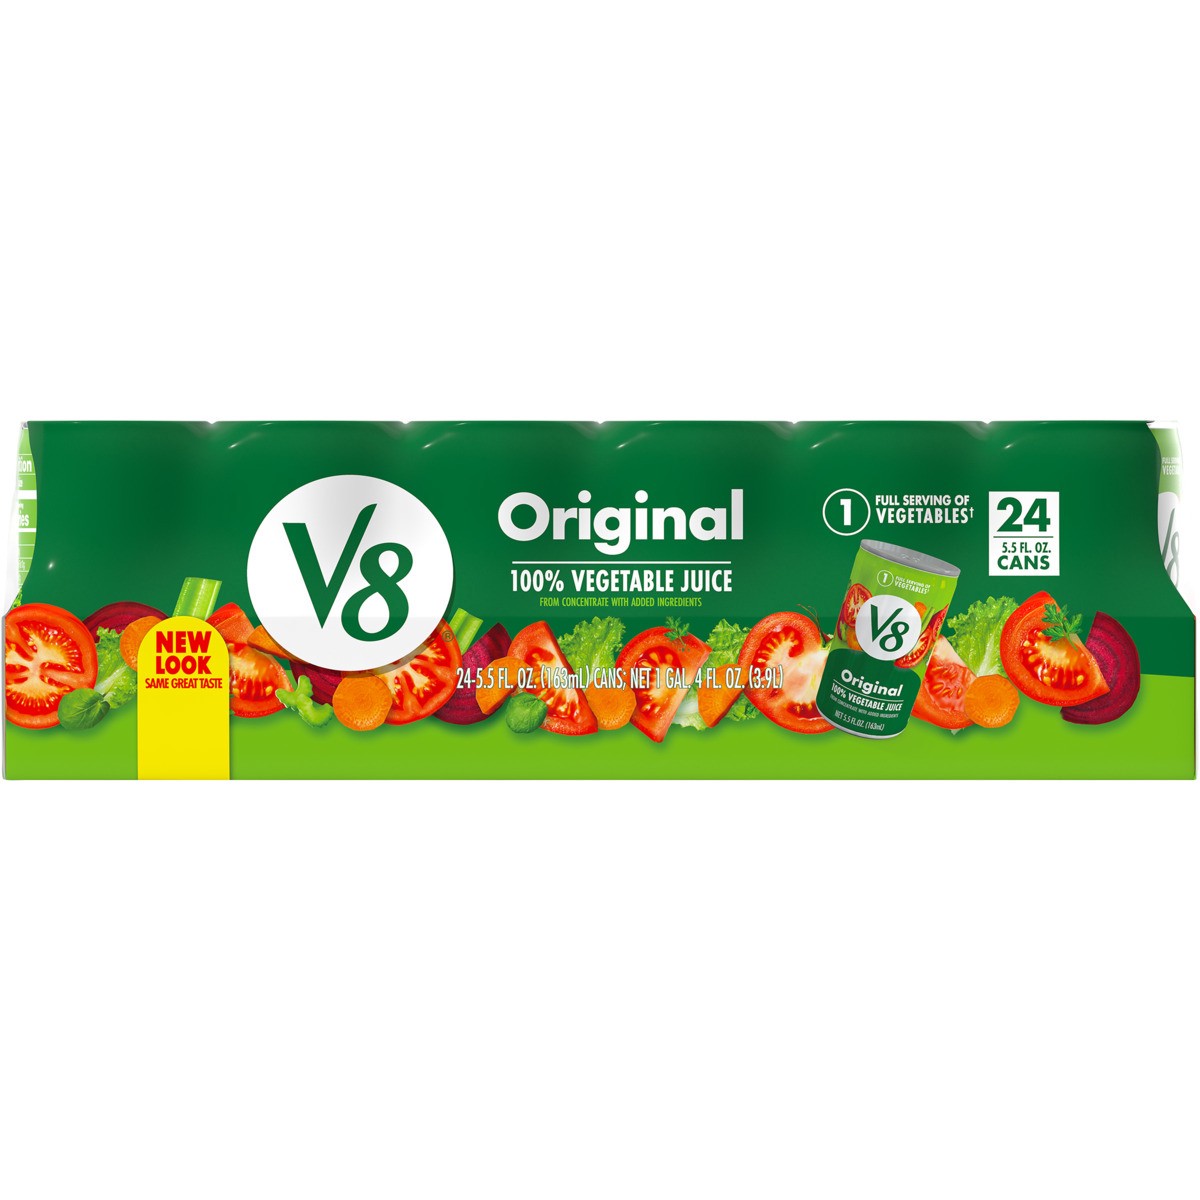 slide 5 of 11, V8 Original 100% Vegetable Juice, 5.5 fl oz Can (24 Pack), 132 oz